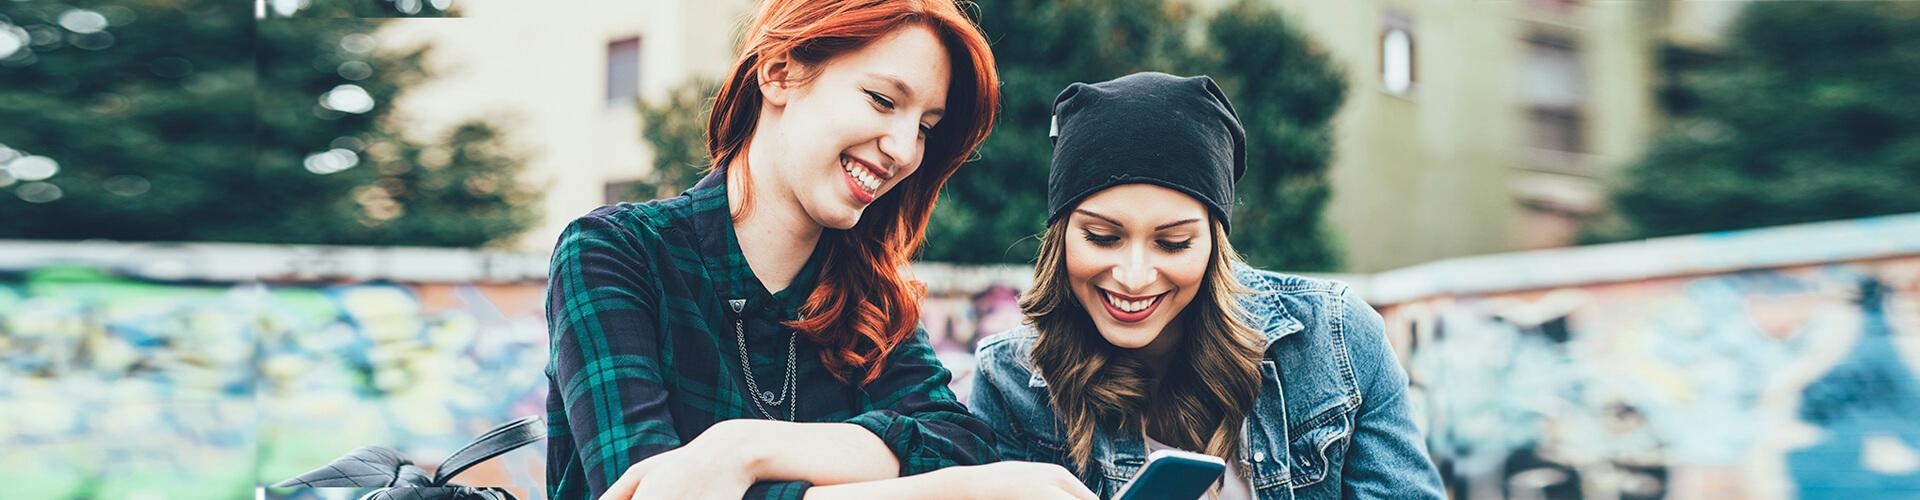 Programa Joven Up - Dos chicas jóvenes sonriendo mientras están con el móvil en la mano sentadas en un parque